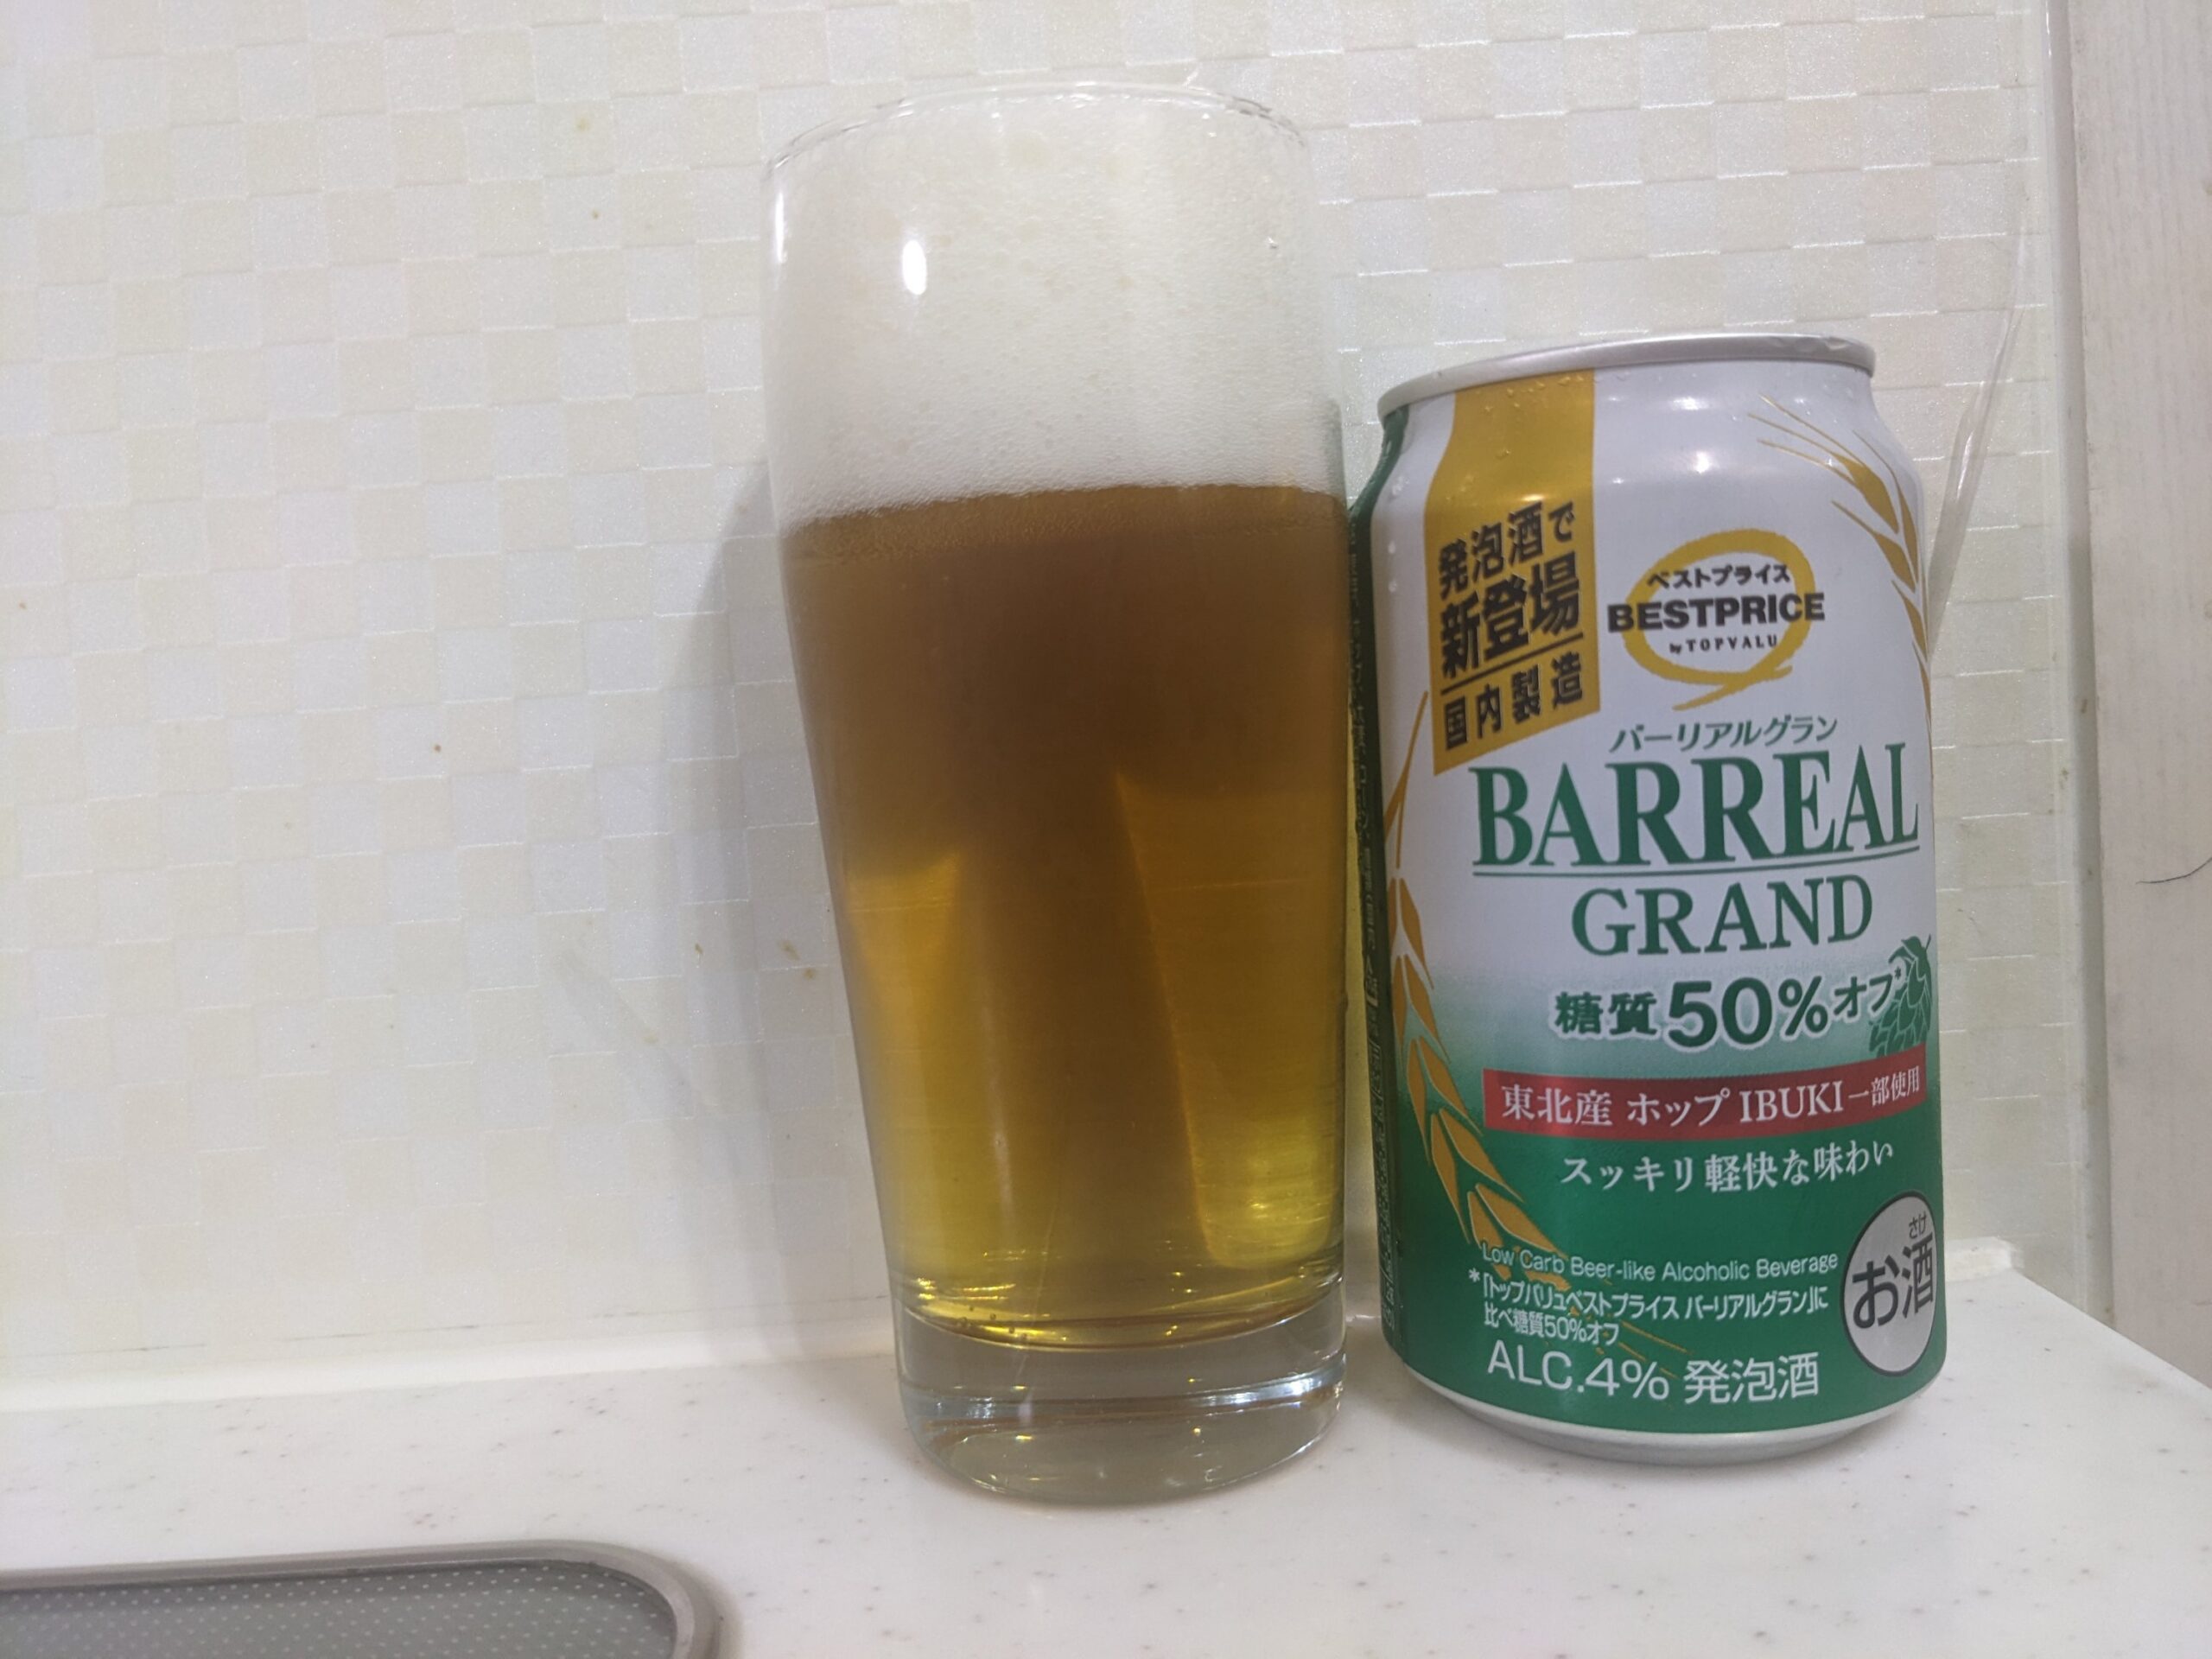 「バーリアルグラン糖質50%オフ」が注がれたグラスとその缶